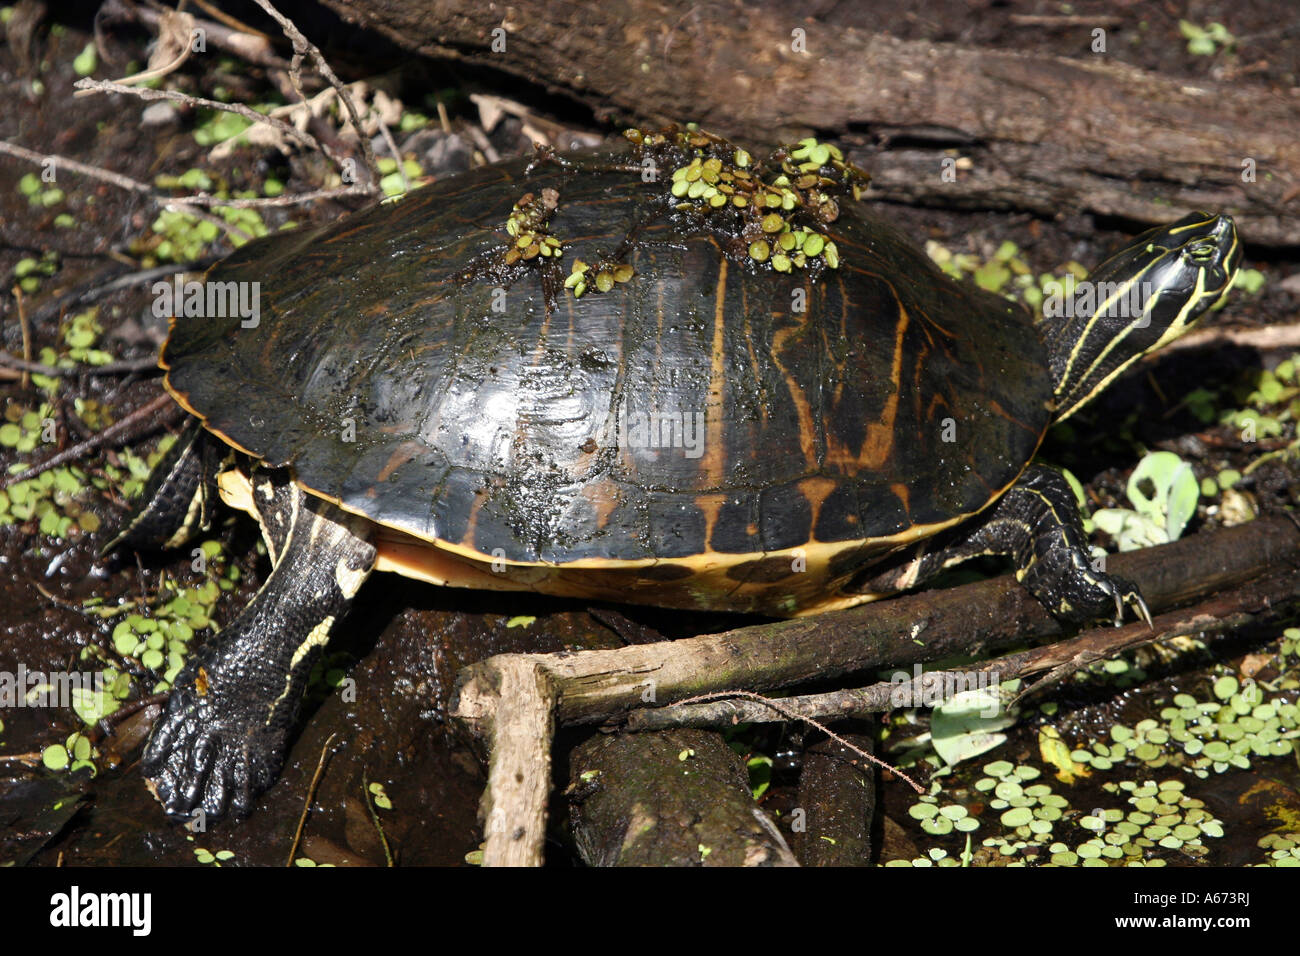 Florida Redbelly Turtle Southwest Florida Foto Stock